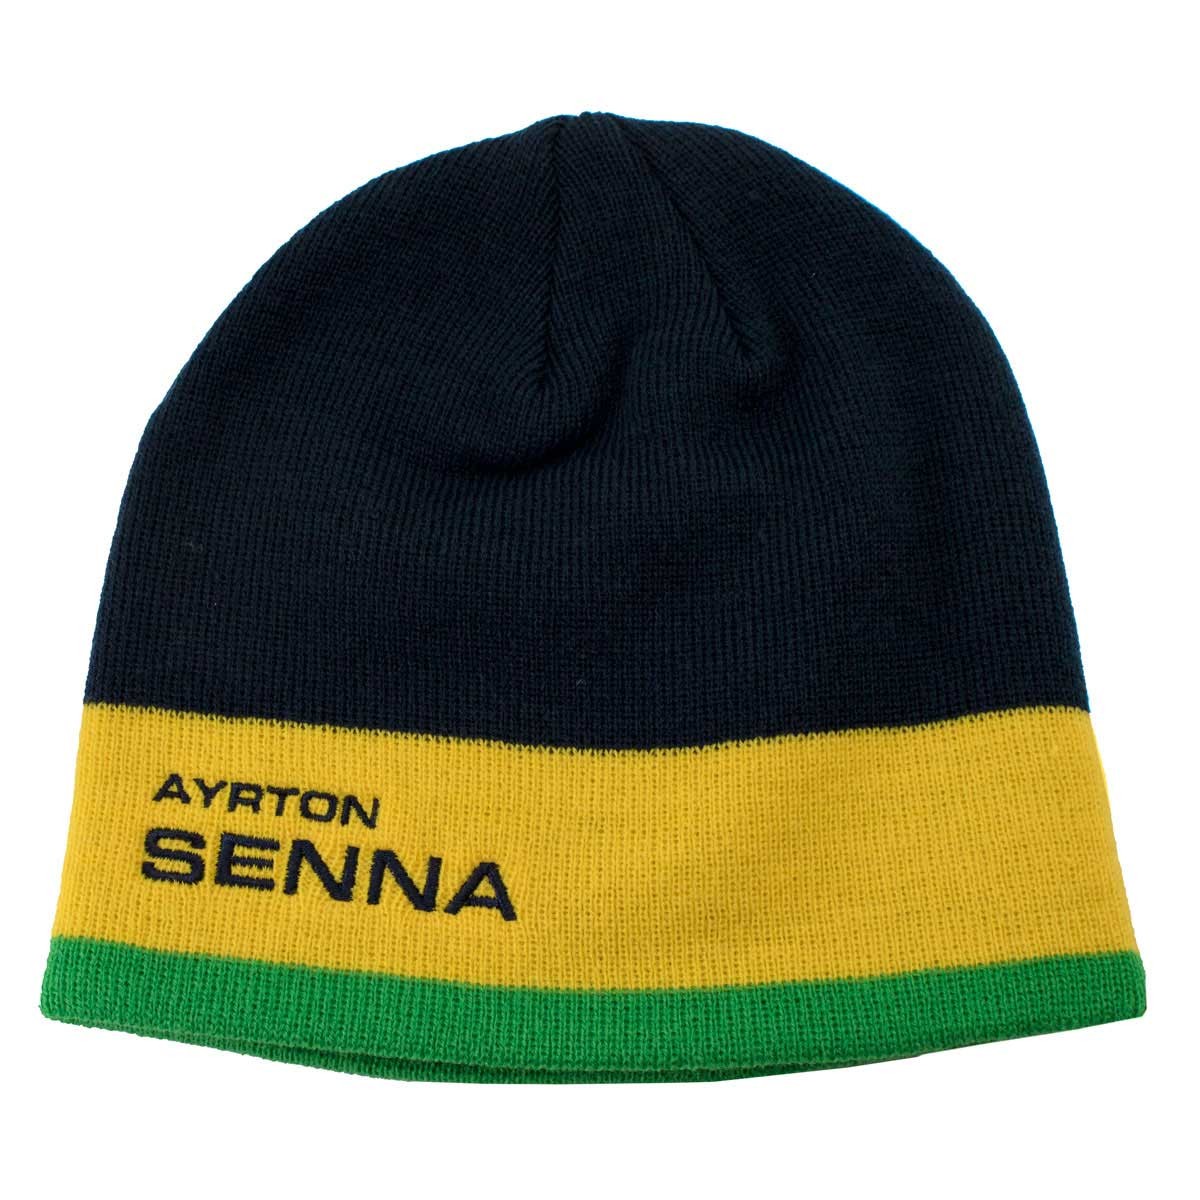 Bonnet Ayrton Senna Racing